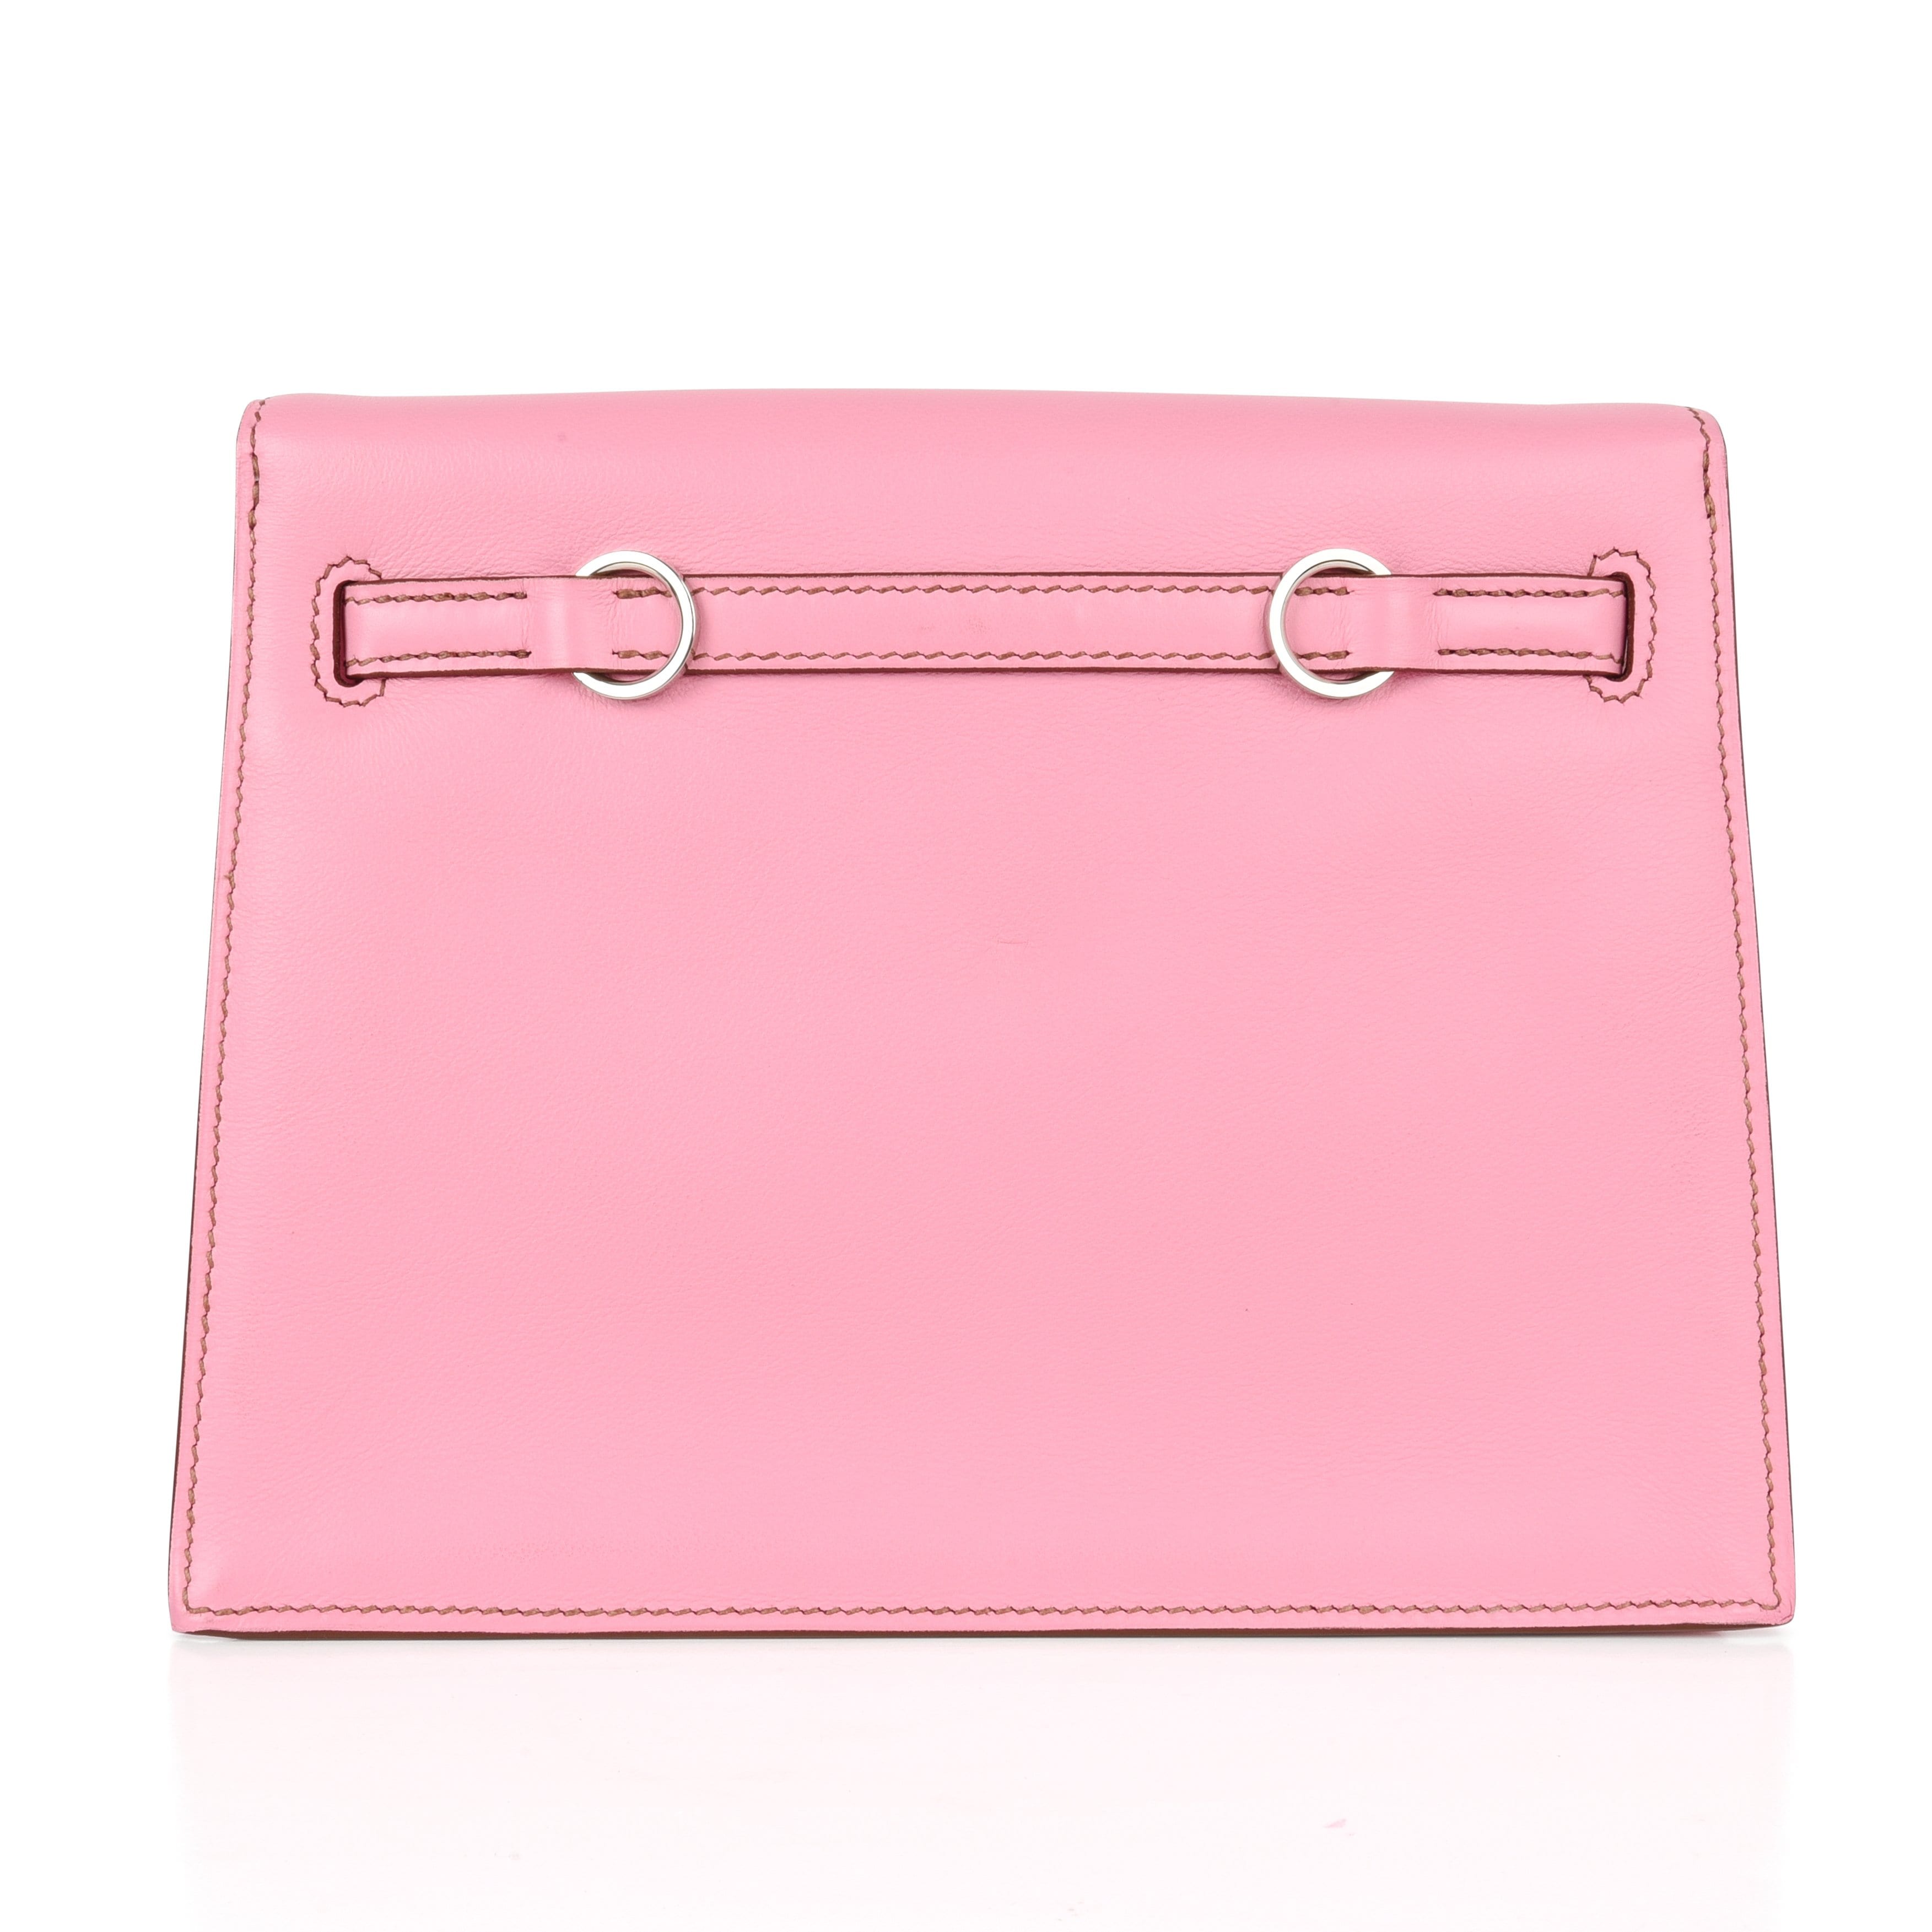 hermes kelly backpack pink